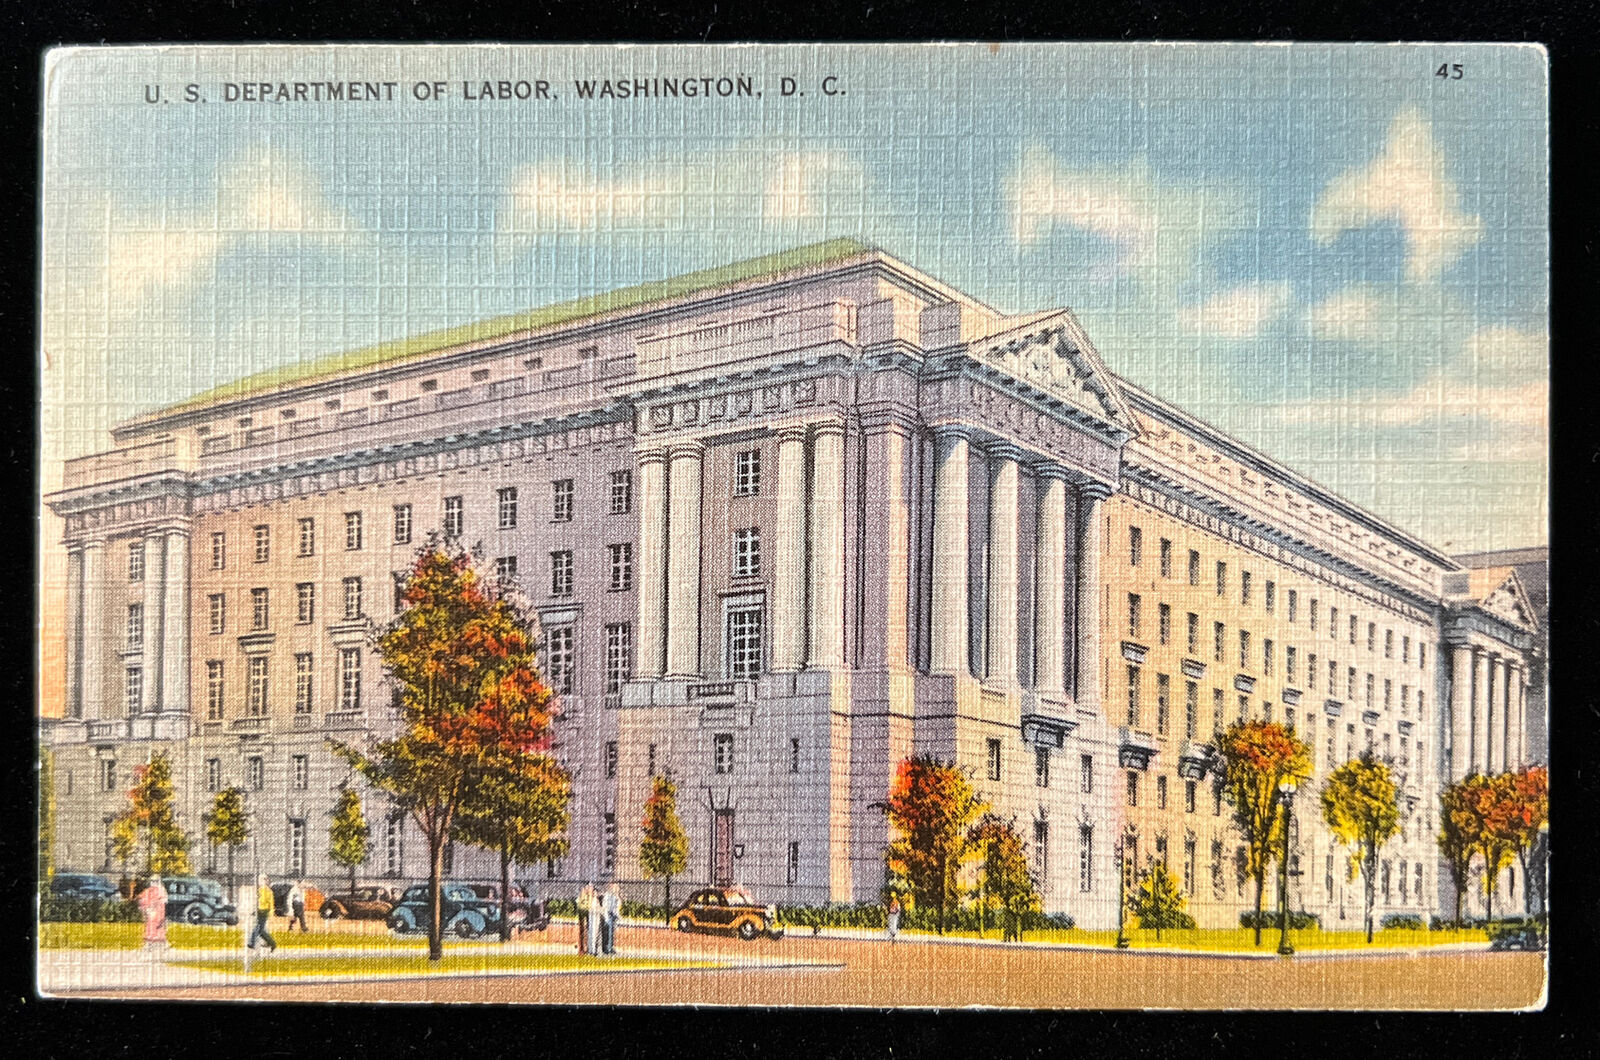 U.S. Department of Labor Building Washington D.C. - Vintage Linen Postcard C1934